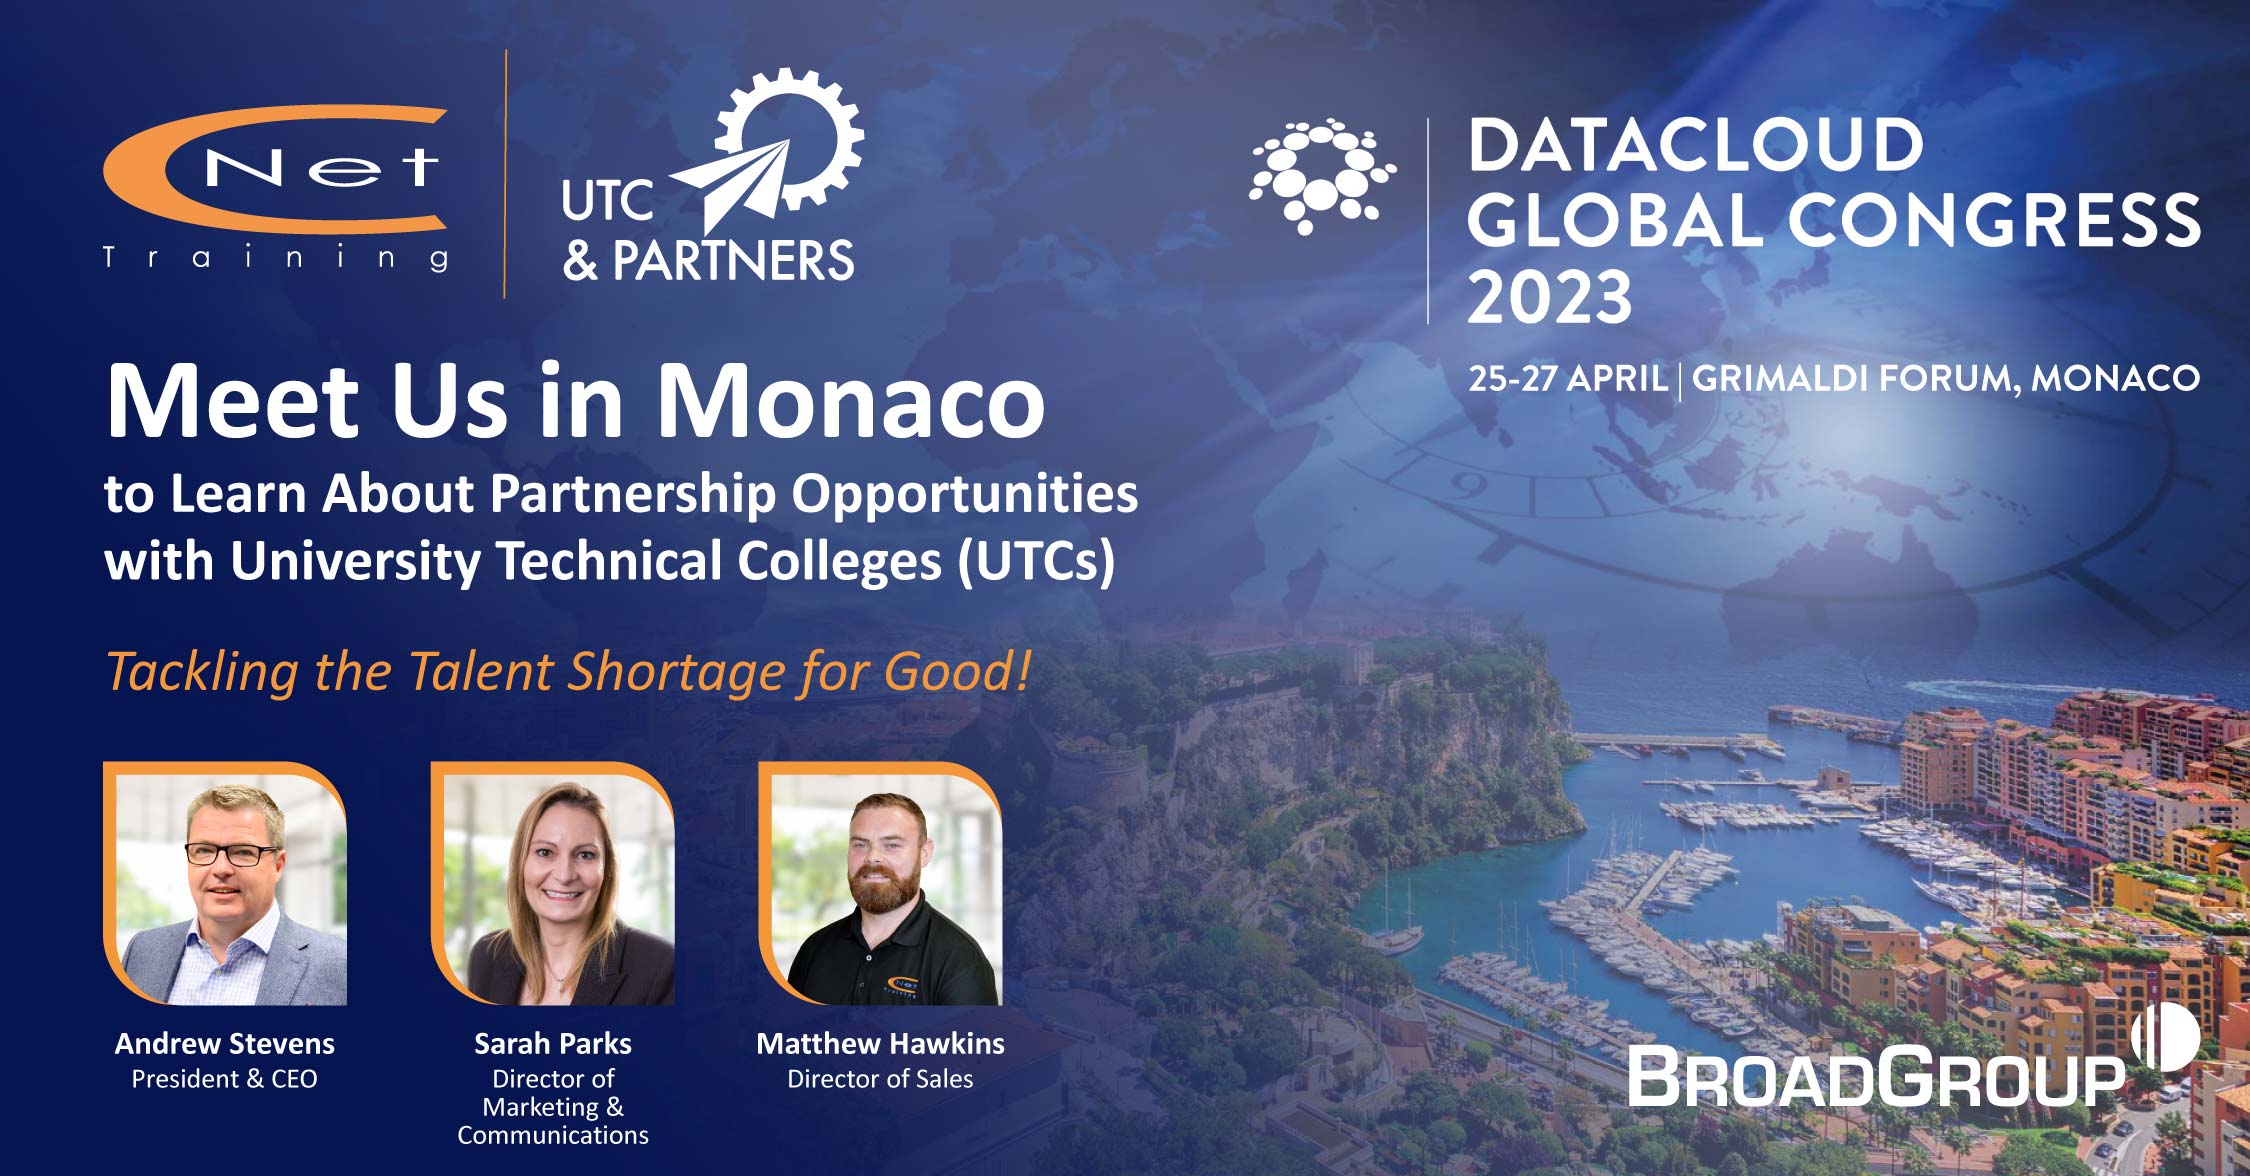 Let’s meet at Datacloud in Monaco! Training